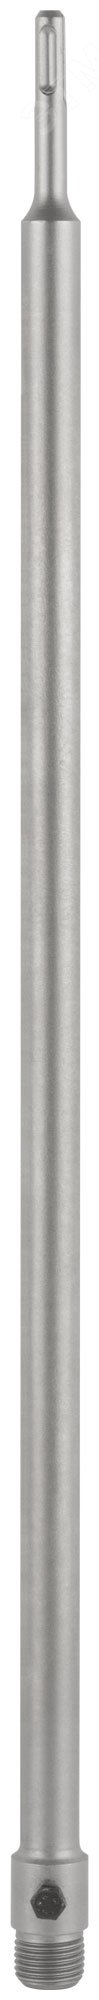 Удлинитель с хвостовиком SDS-PLUS для коронок по бетону, резьба М22, длина 600 мм 33458 FIT - превью